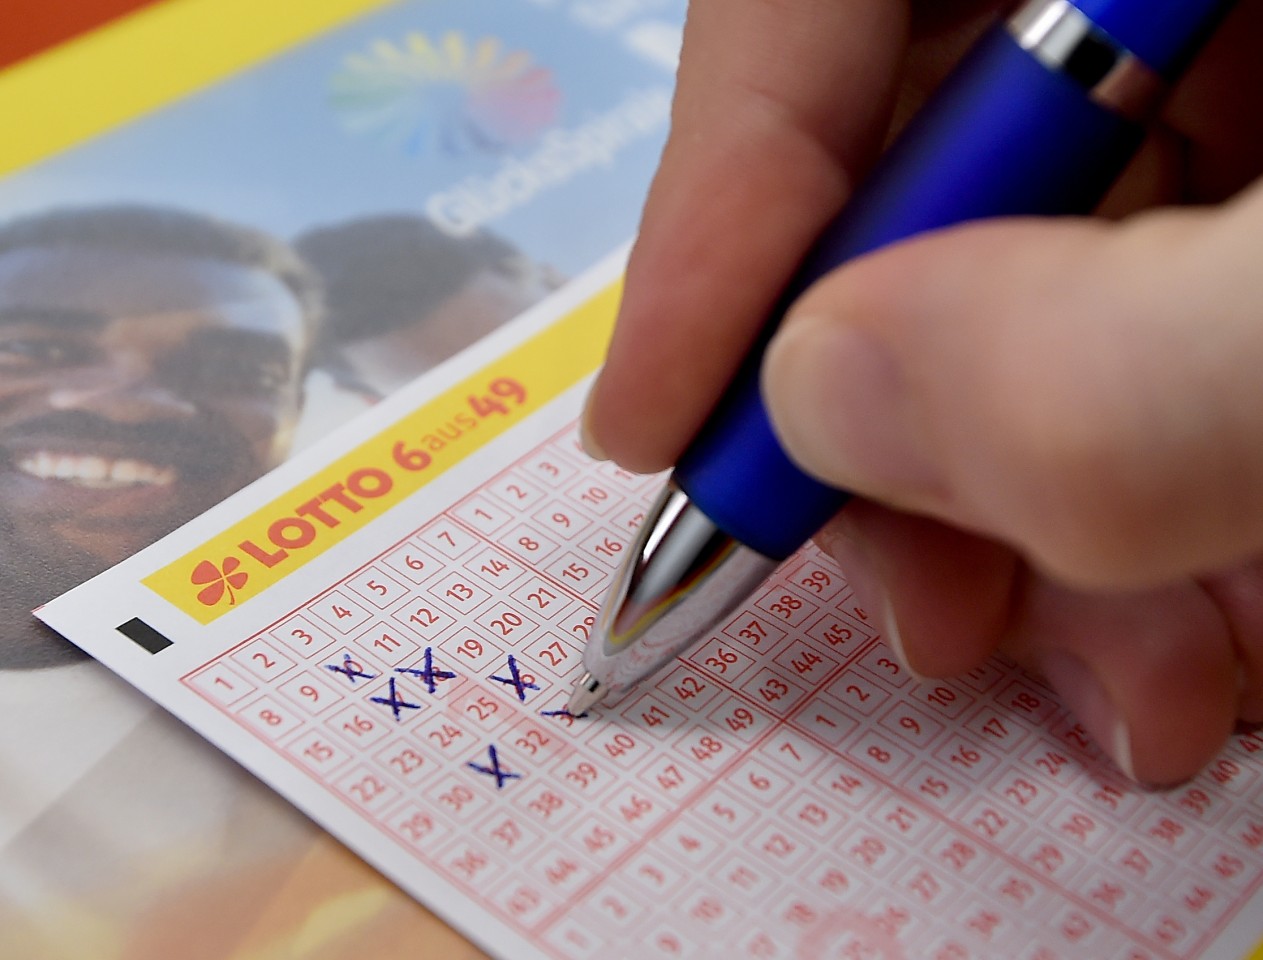 Lotto: Der Gewinner hat seinen Lottoschein entweder vergessen oder verloren. (Symbolbild)